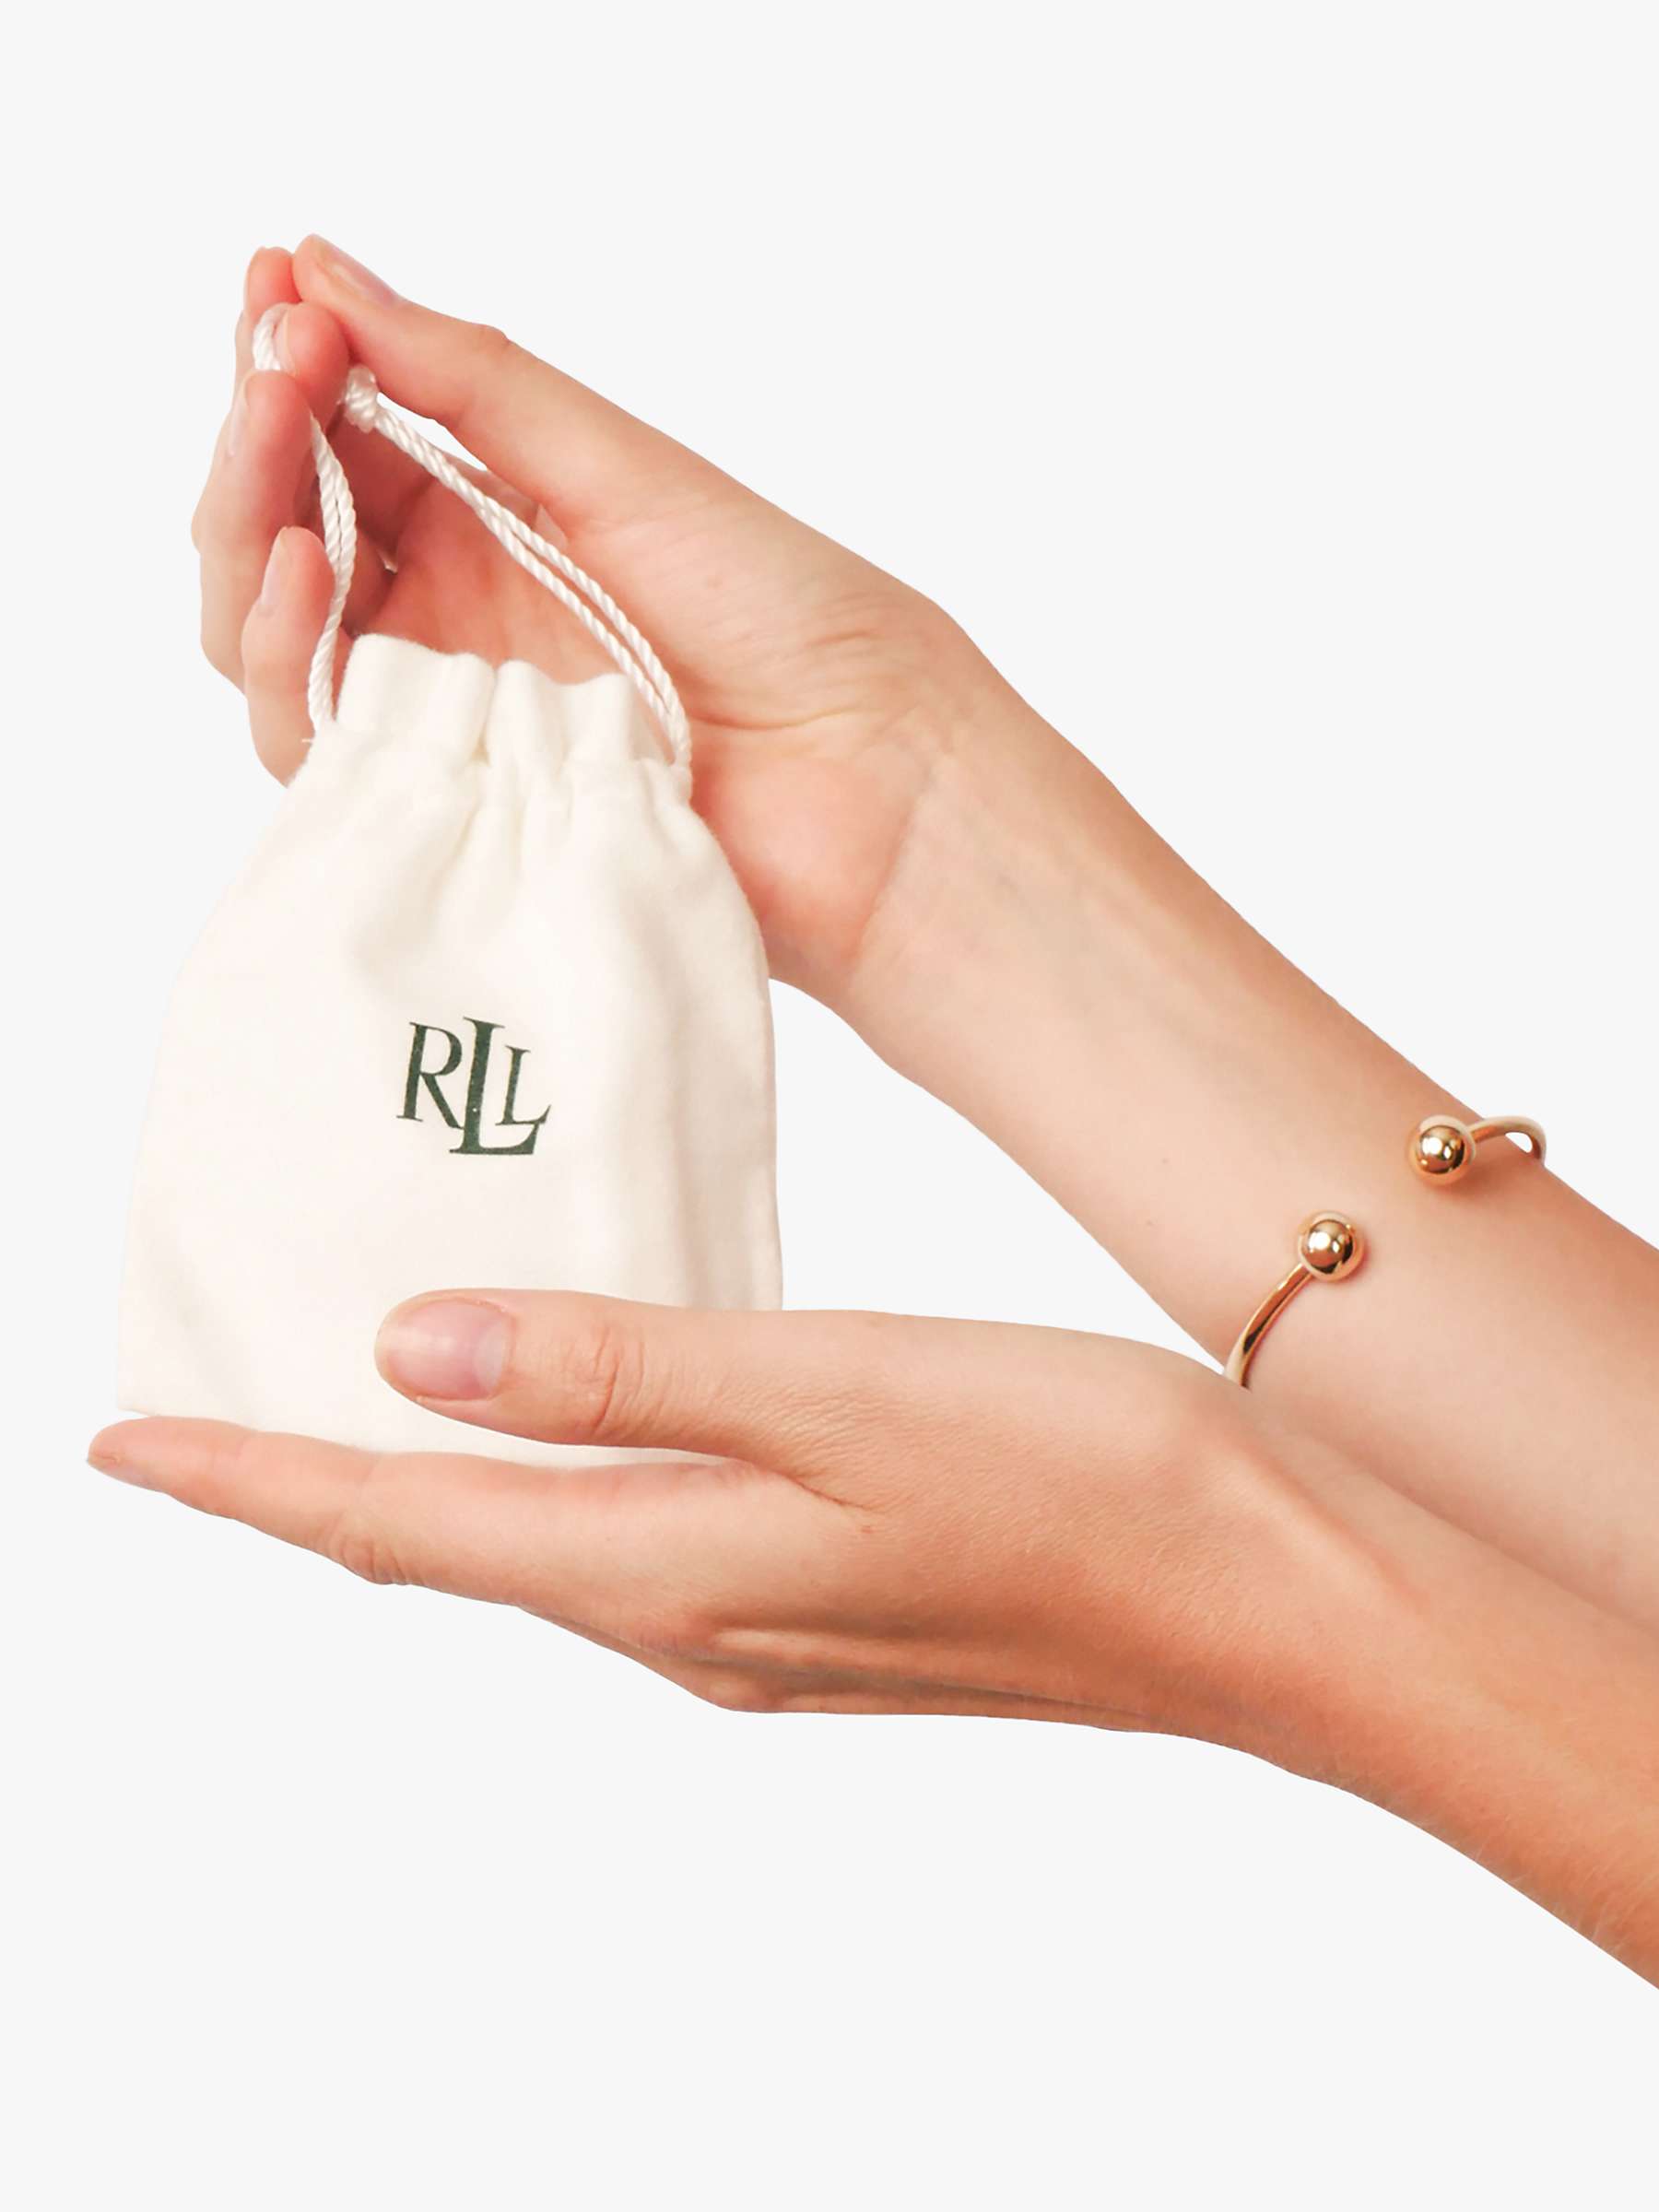 Buy Lauren Ralph Lauren Padlock Beaded Bracelet, Gold Online at johnlewis.com